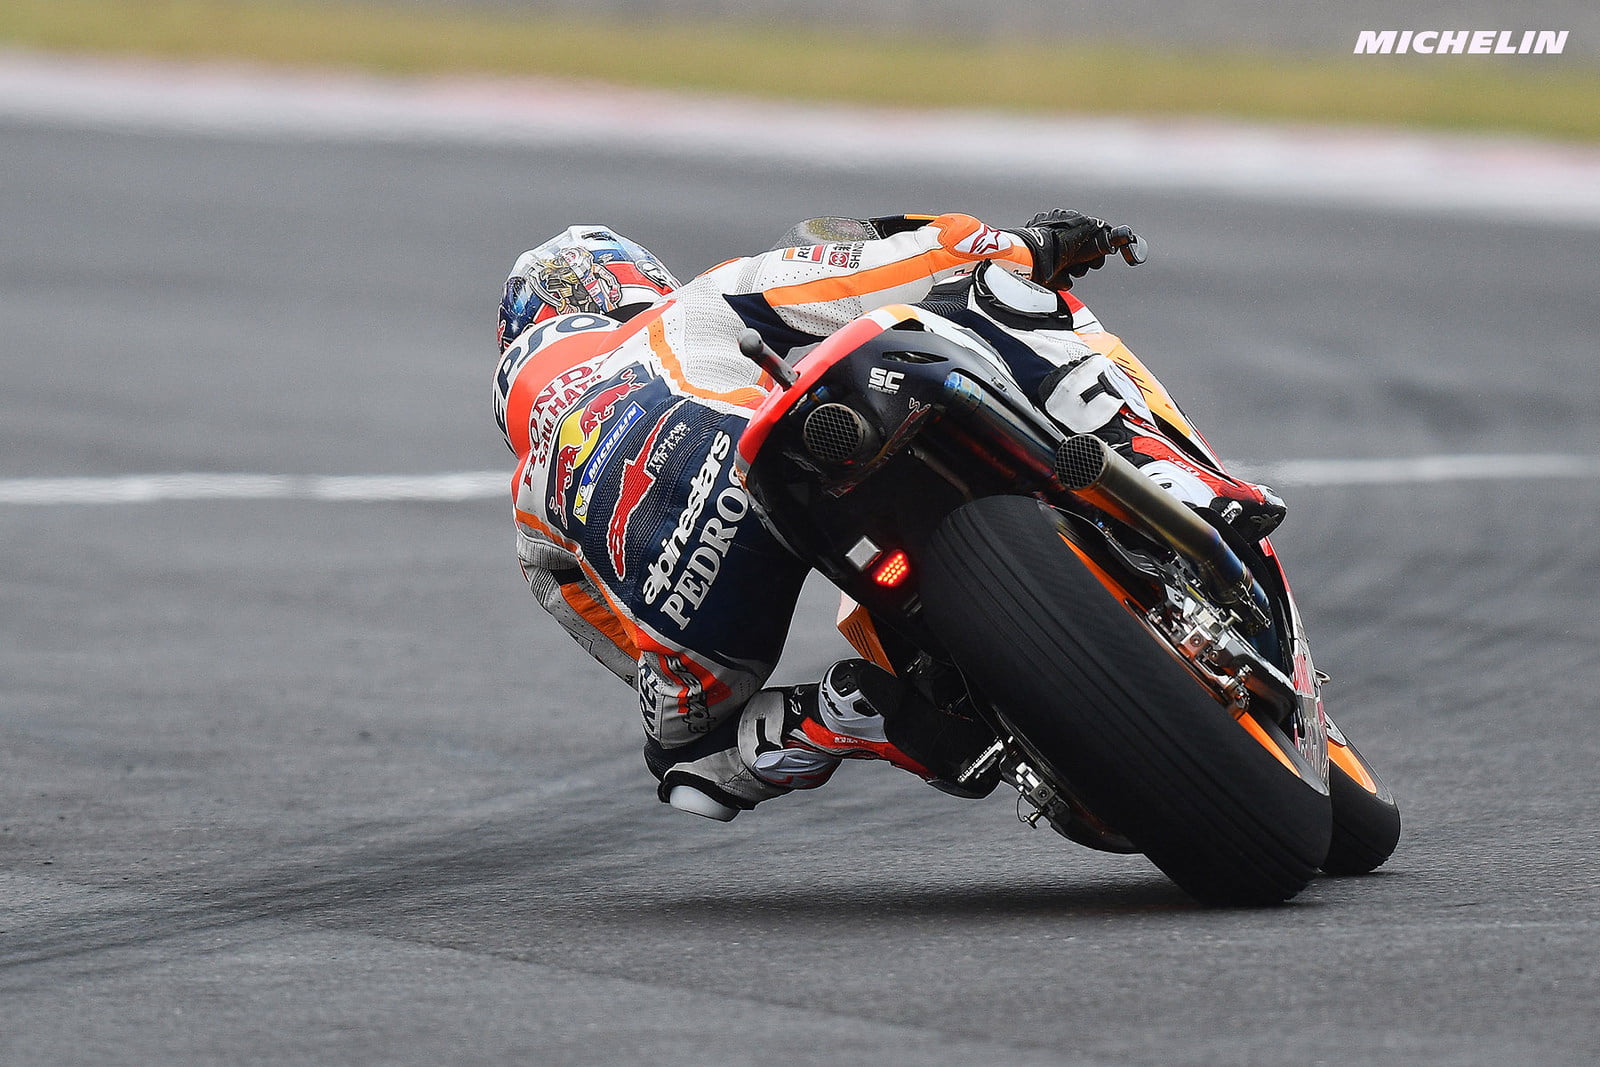 #ArgentinaGP J2 Ce qu’il faut retenir : Marquez et KTM en pole, Ducati à la peine